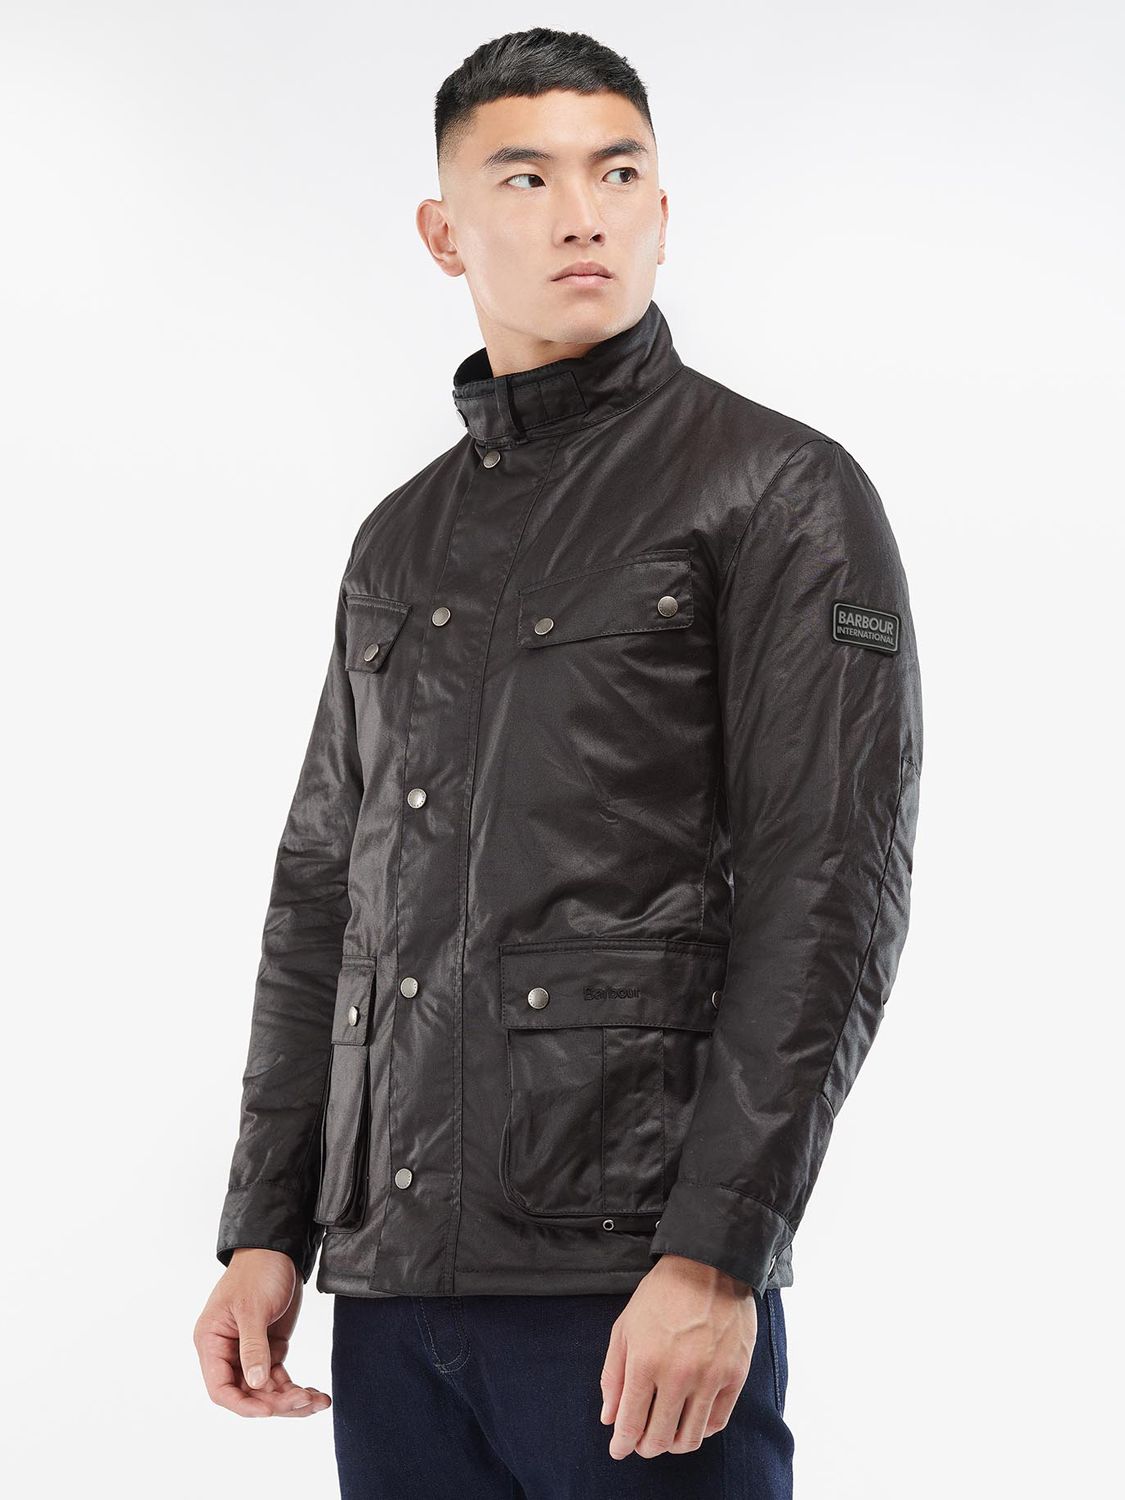 Вощеная куртка Barbour International Tourer Duke, деревенский стиль –  заказать по выгодной цене из-за рубежа в «CDEK.Shopping»